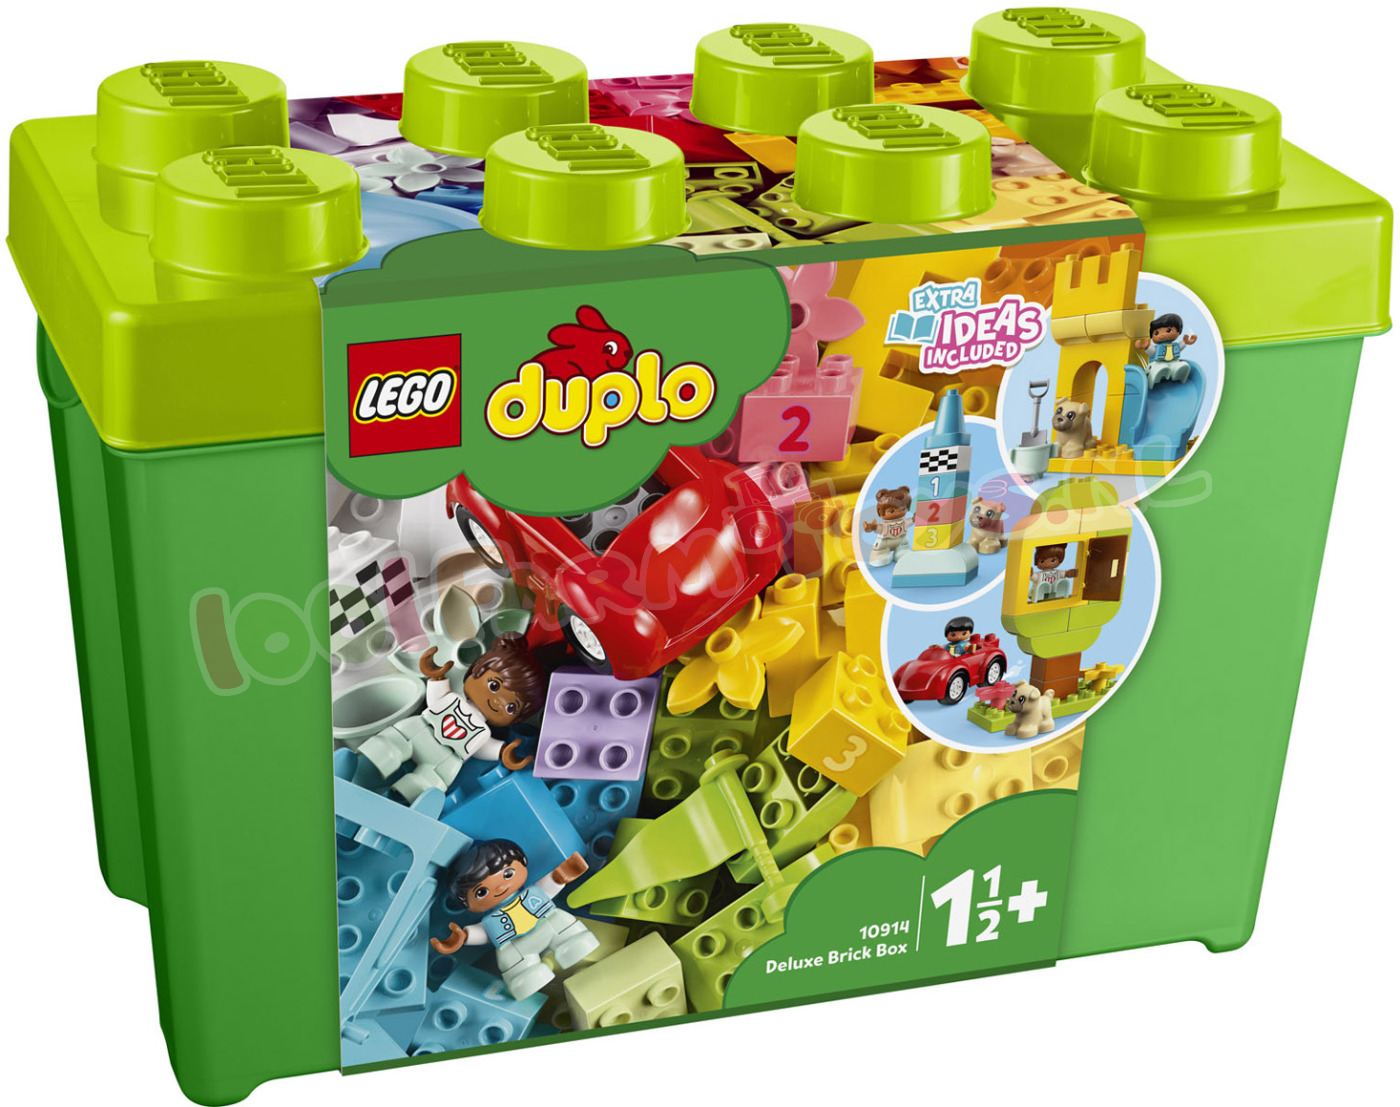 uitbarsting Keel ik zal sterk zijn LEGO DUPLO Luxe Mix Opbergdoos groot - 10914 - DUPLO - 1001Farmtoys  landbouwspeelgoed - Stimuleer de creativiteit en talloze  ontwikkelingsvoordelen met